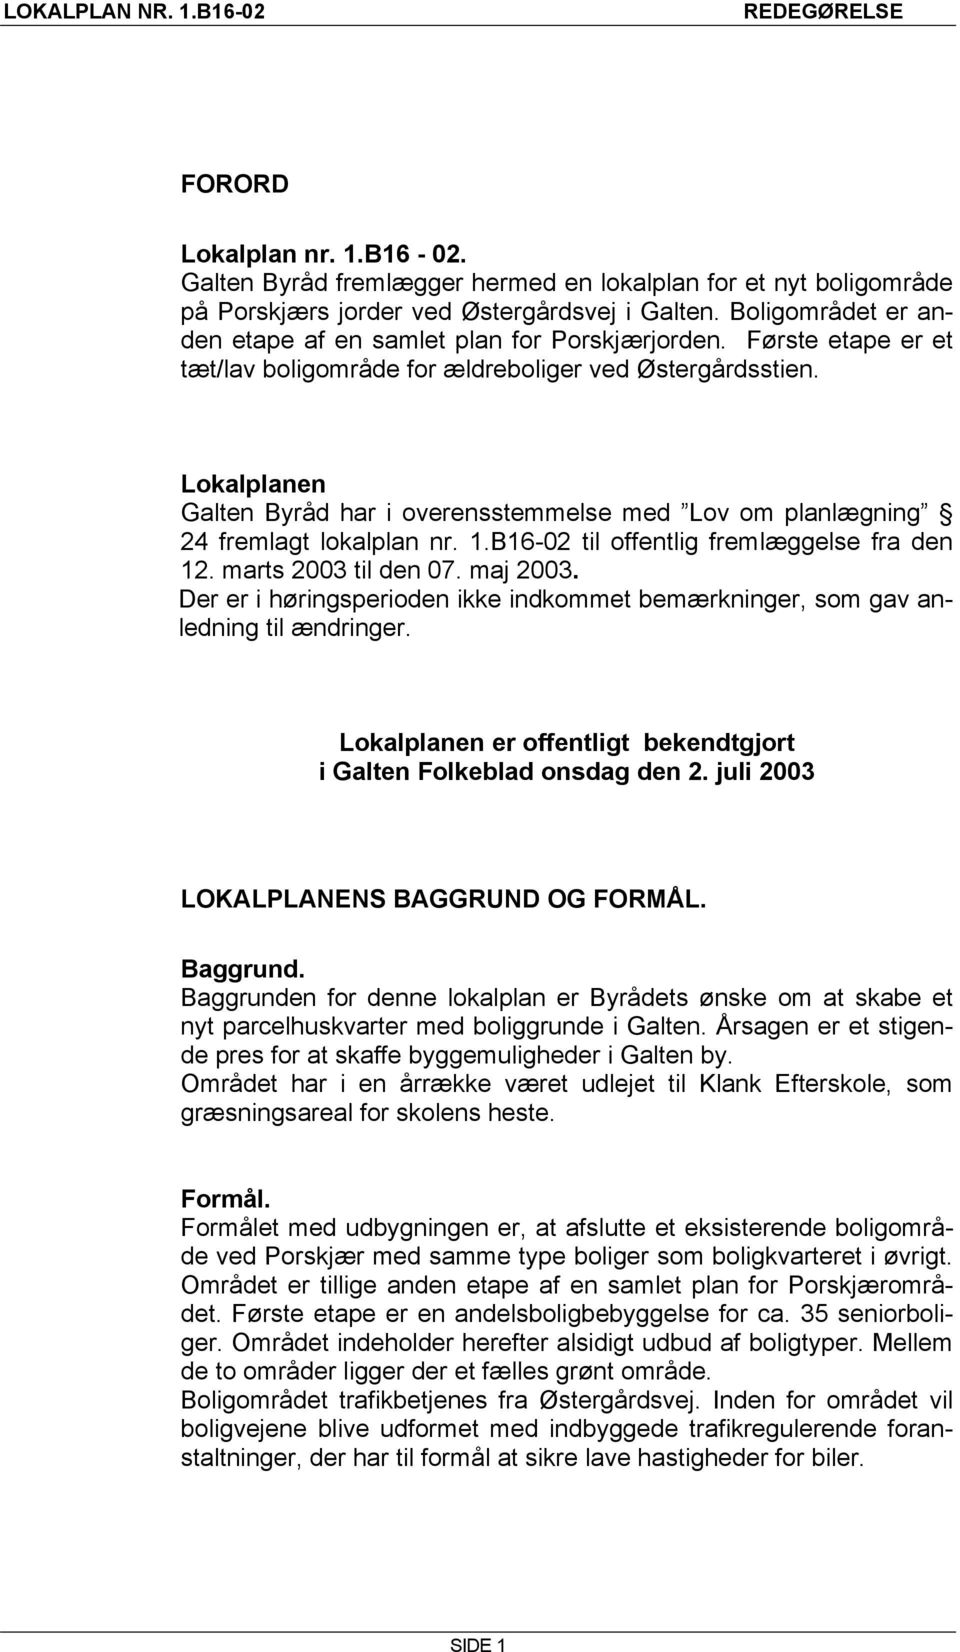 Lokalplanen Galten Byråd har i overensstemmelse med Lov om planlægning 24 fremlagt lokalplan nr. 1.B16-02 til offentlig fremlæggelse fra den 12. marts 2003 til den 07. maj 2003.